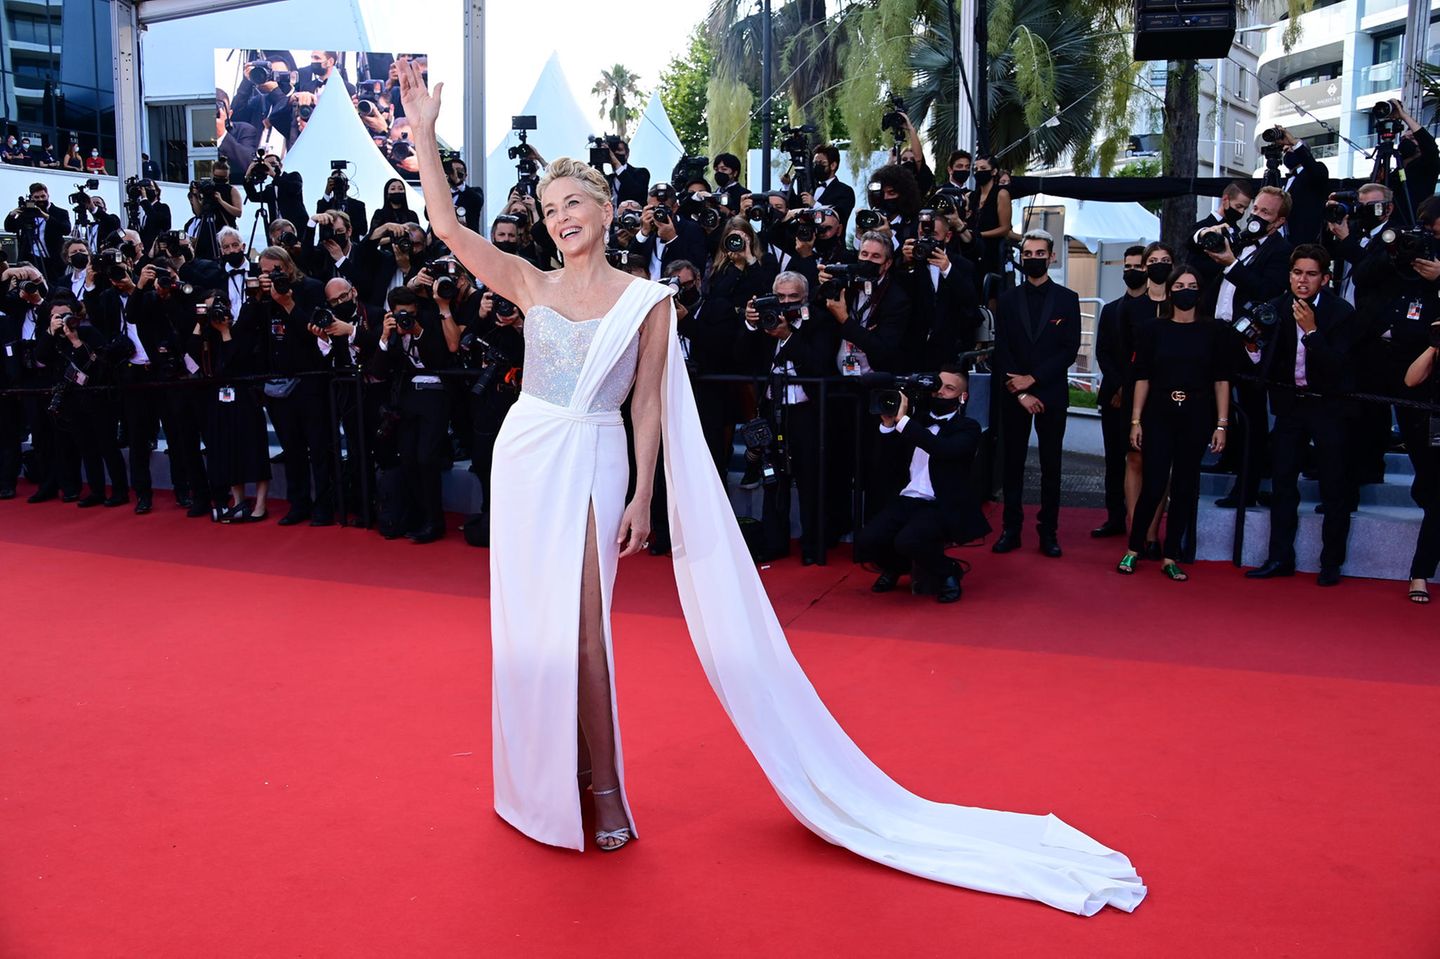 Au revoir Cannes! Die diesjährigen Filmfestspiele sind Vergangenheit und Sharon Stone verabschiedet sich auf dem roten Teppich mit diesem eleganten Glamour-Look von Dolce & Gabbana.